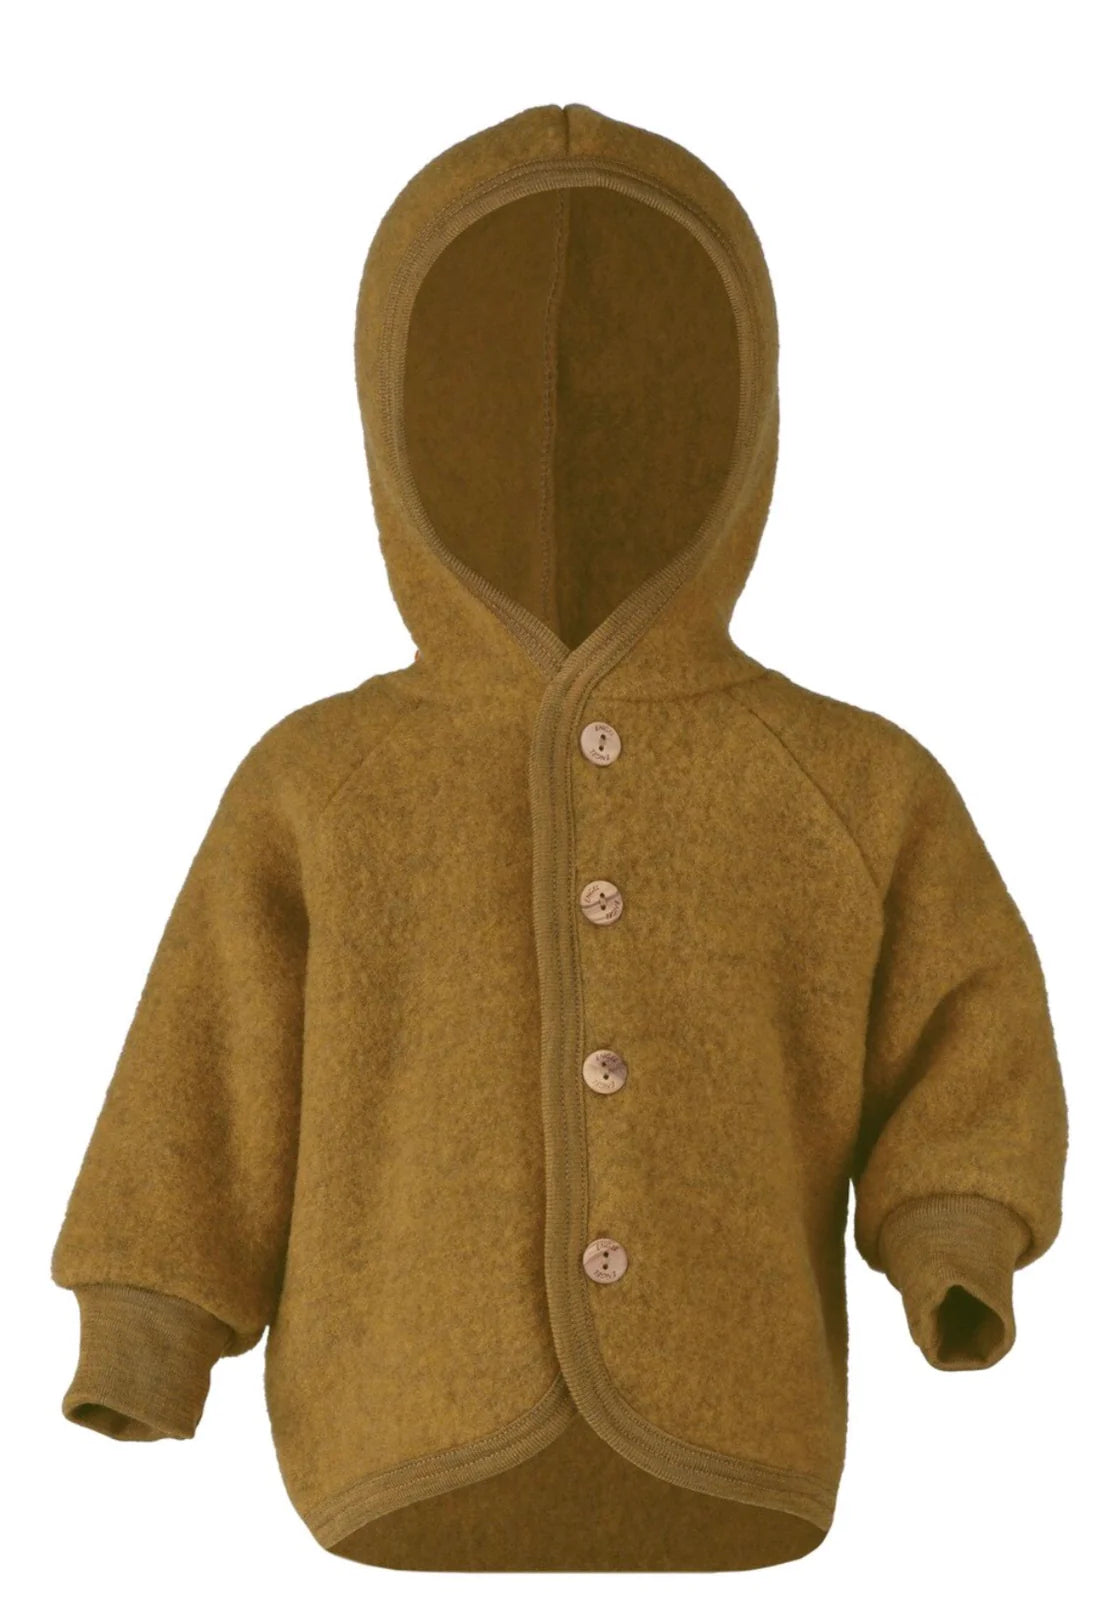 Wool Fleece Hooded Jacket - Saffron